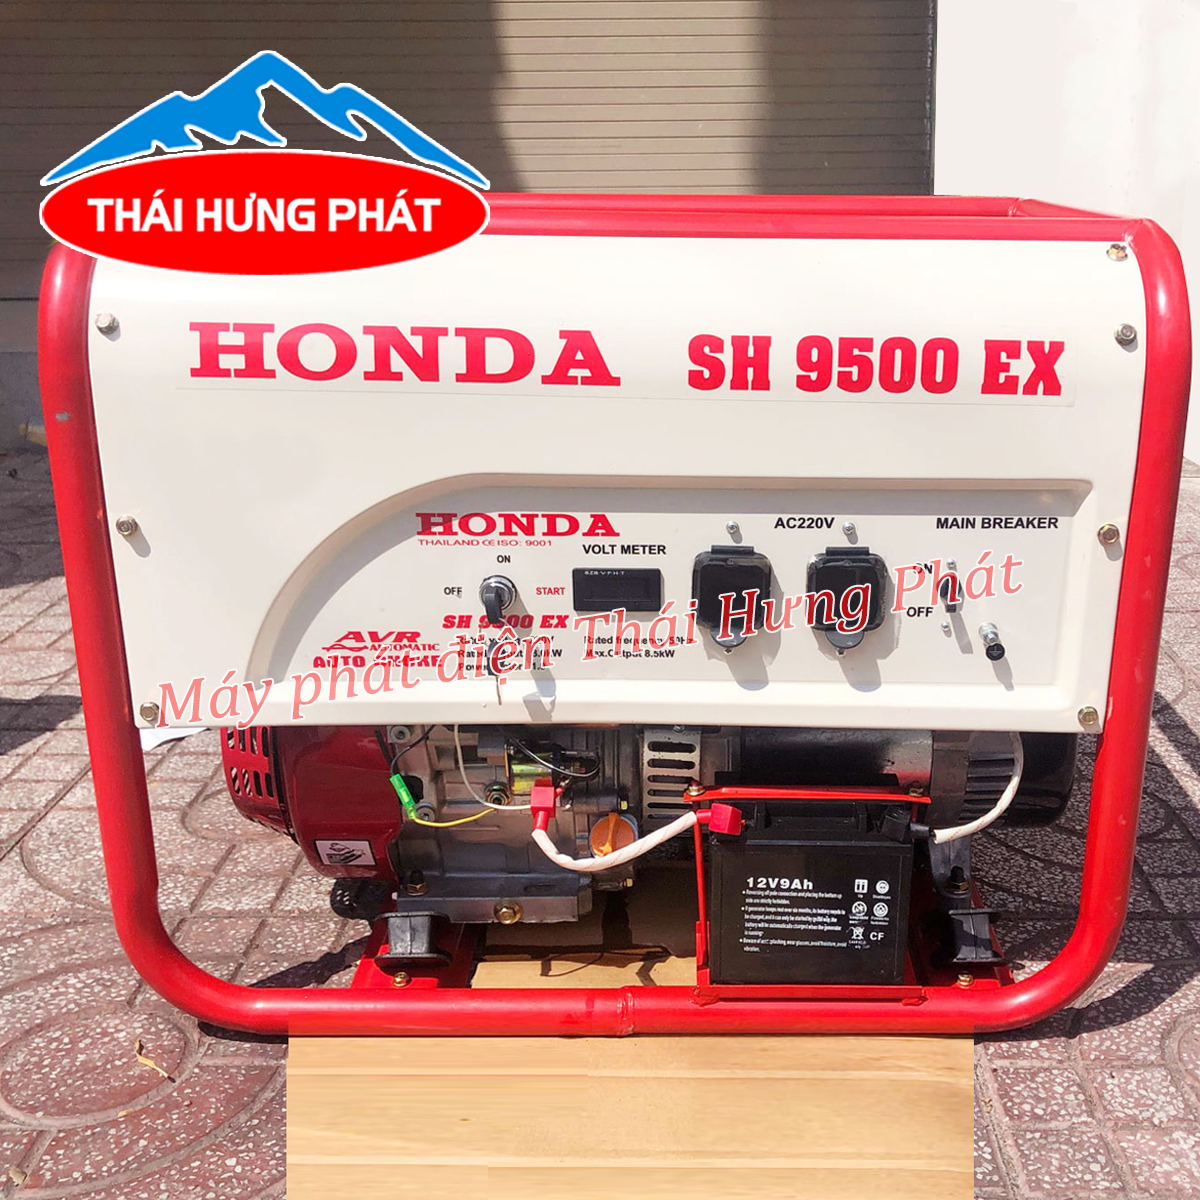 Ý nghĩa về các thông số máy phát điện Honda